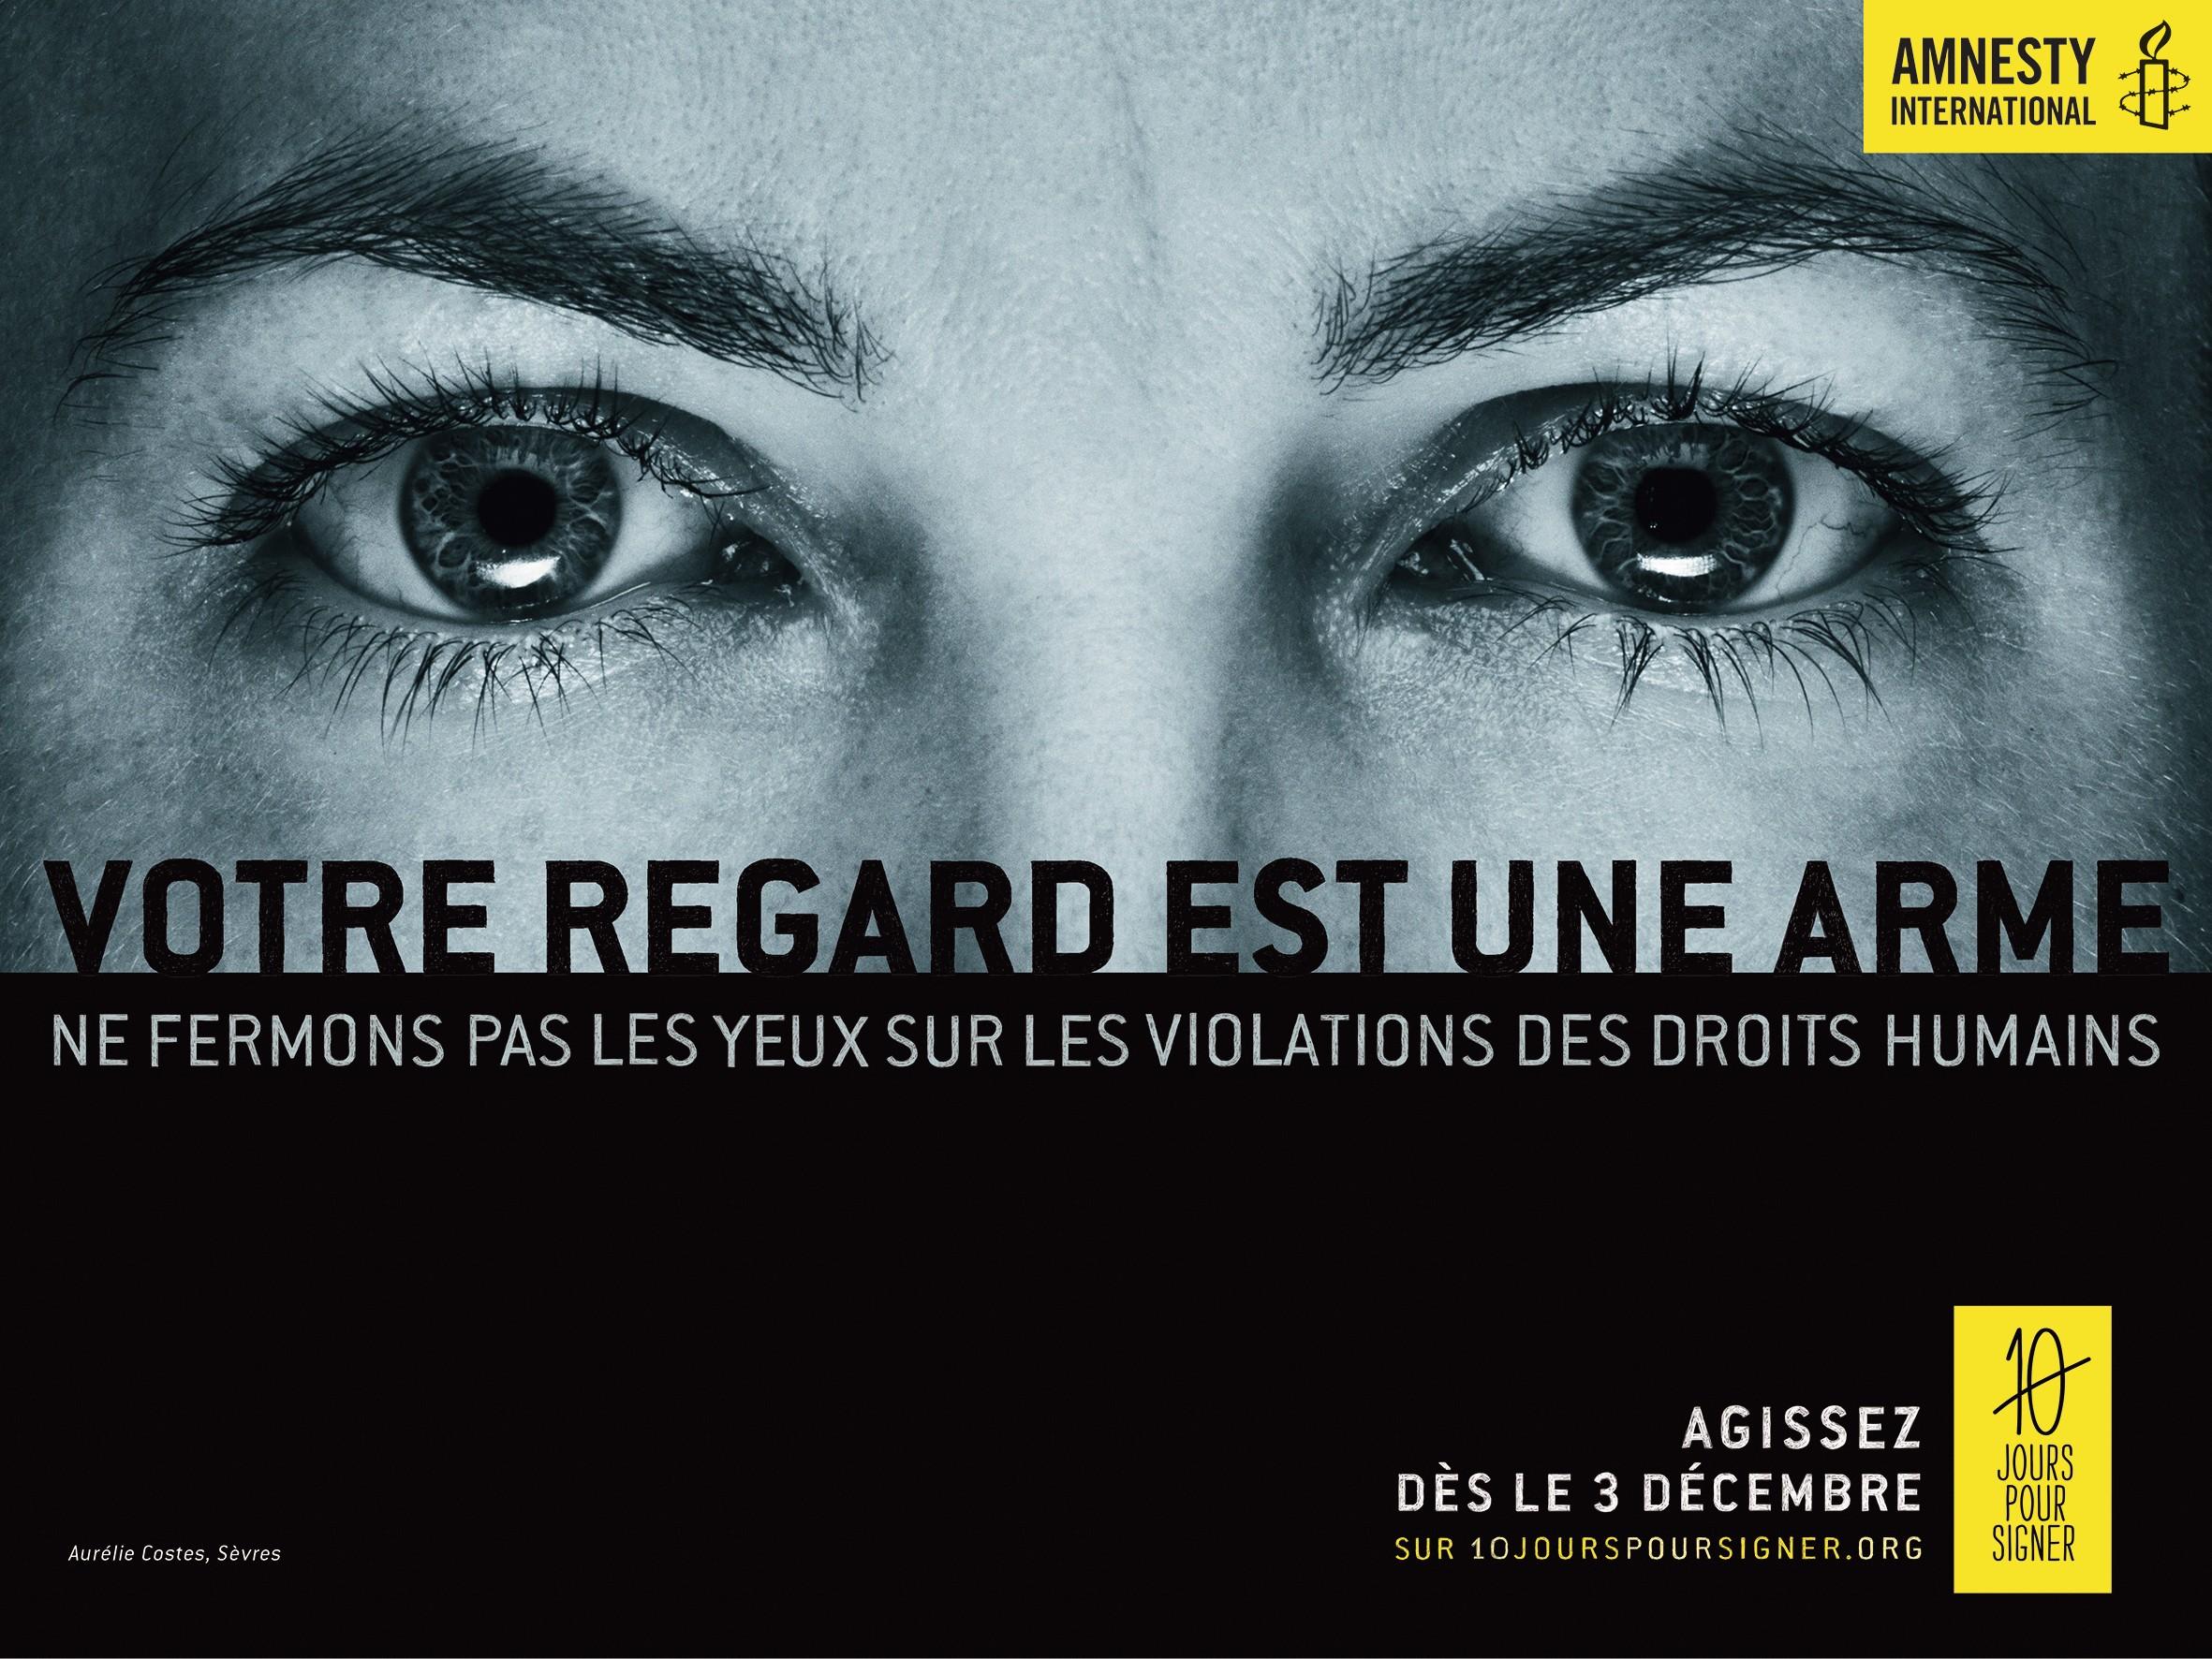 « Votre regard est une arme », affiche d’Amnesty International, 3 décembre 2014.